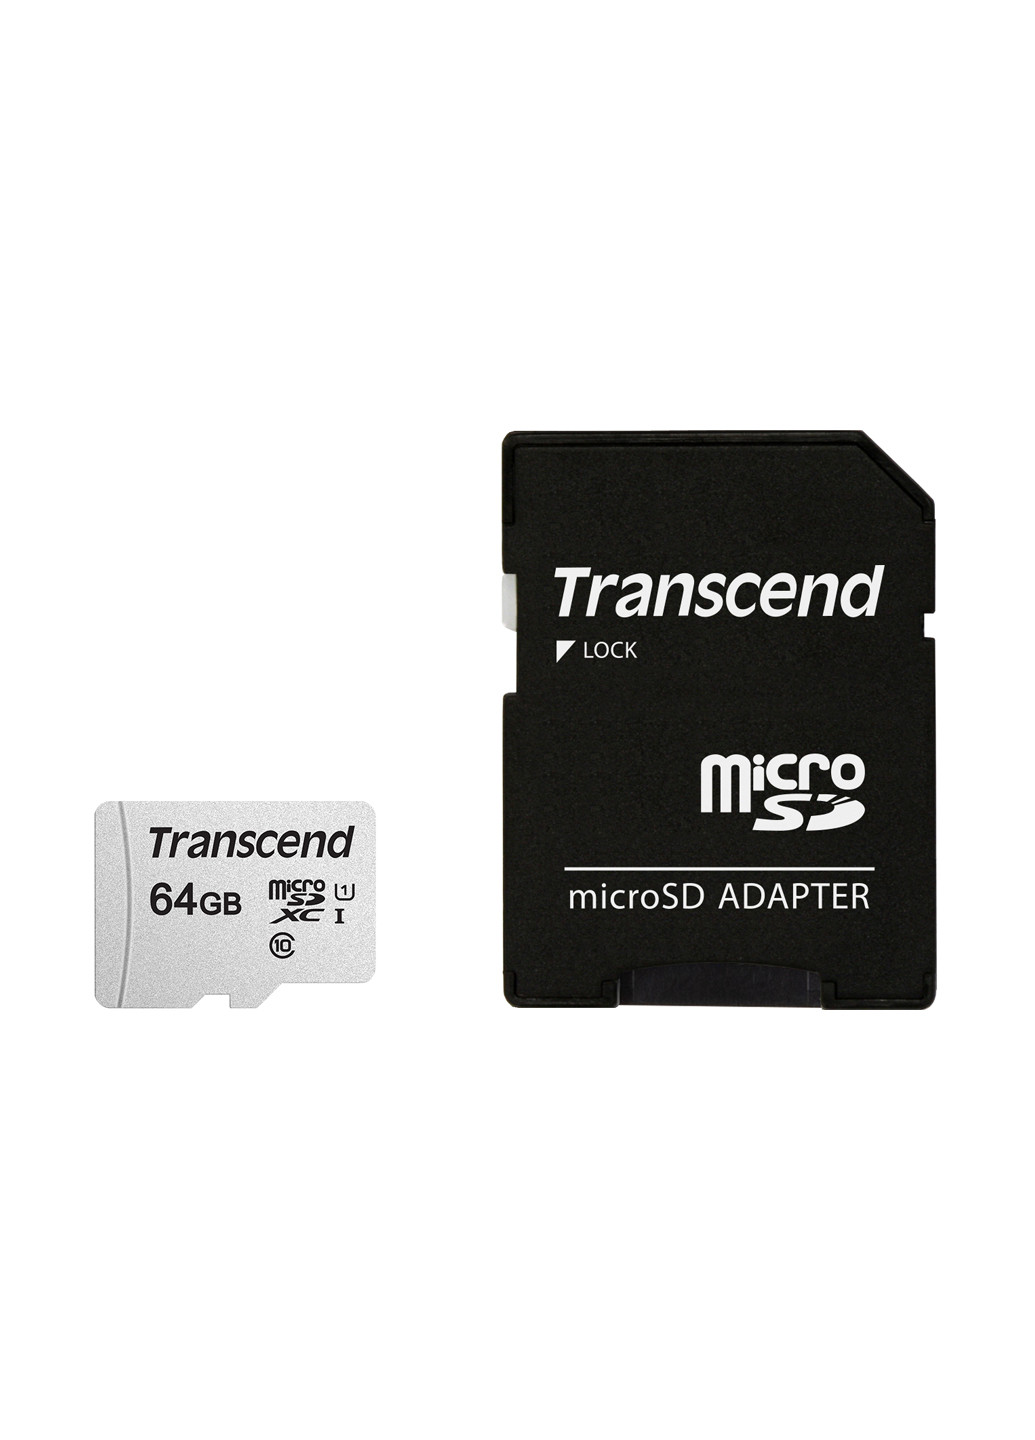 Карта памяти microSDXC 64GB C10 UHS-I (R95/W45MB/s) + SD-adapter (TS64GUSD300S-A) Transcend карта памяти transcend microsdxc 64gb c10 uhs-i (r95/w45mb/s) + sd-adapter (ts64gusd300s-a) (135316898)